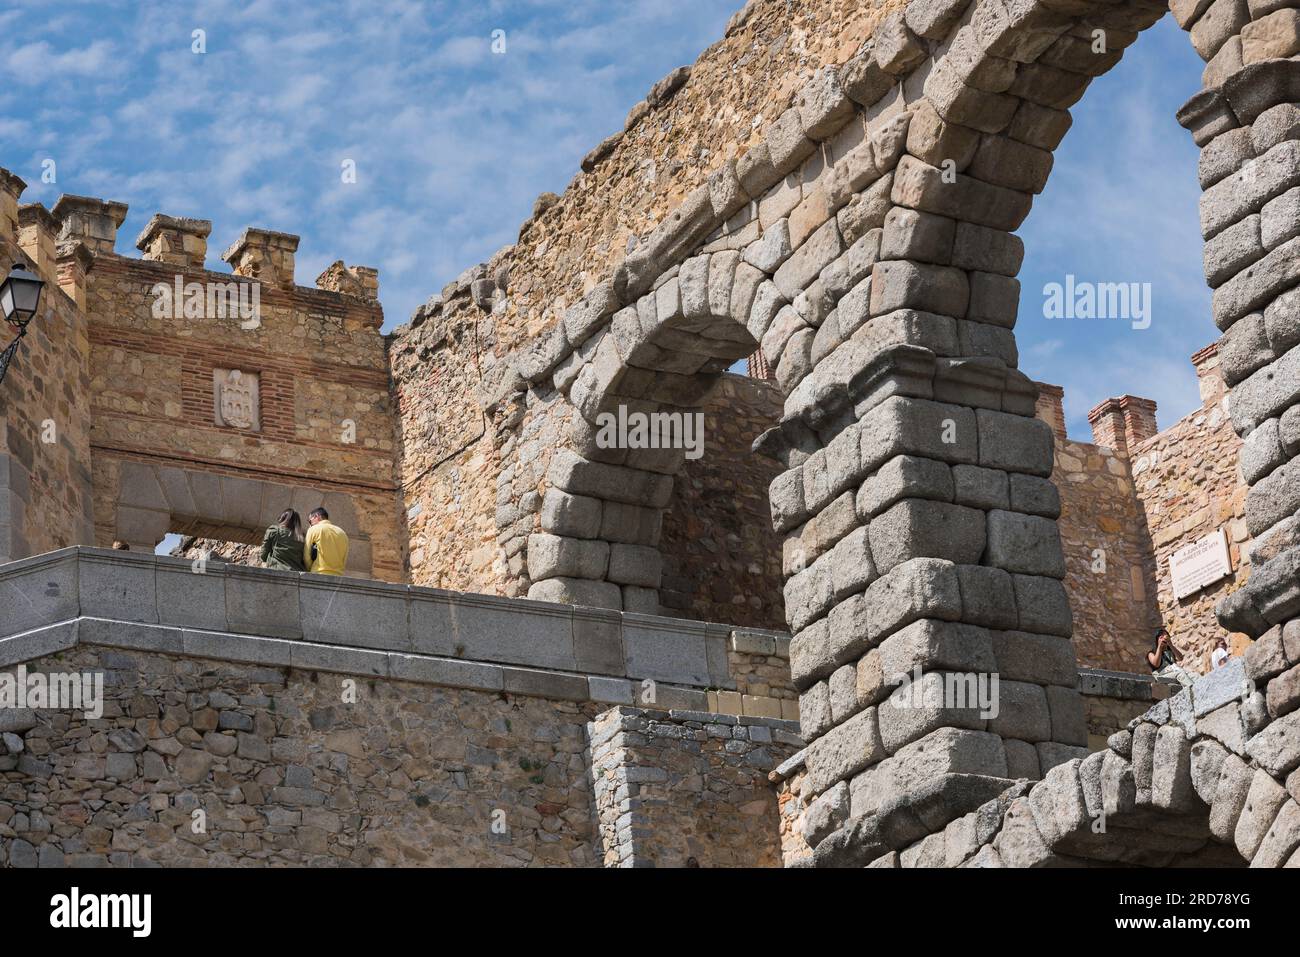 Espagne tourisme, vue arrière d'un jeune couple en conversation à côté du magnifique aqueduc romain du 1e siècle à Ségovie, Espagne Banque D'Images